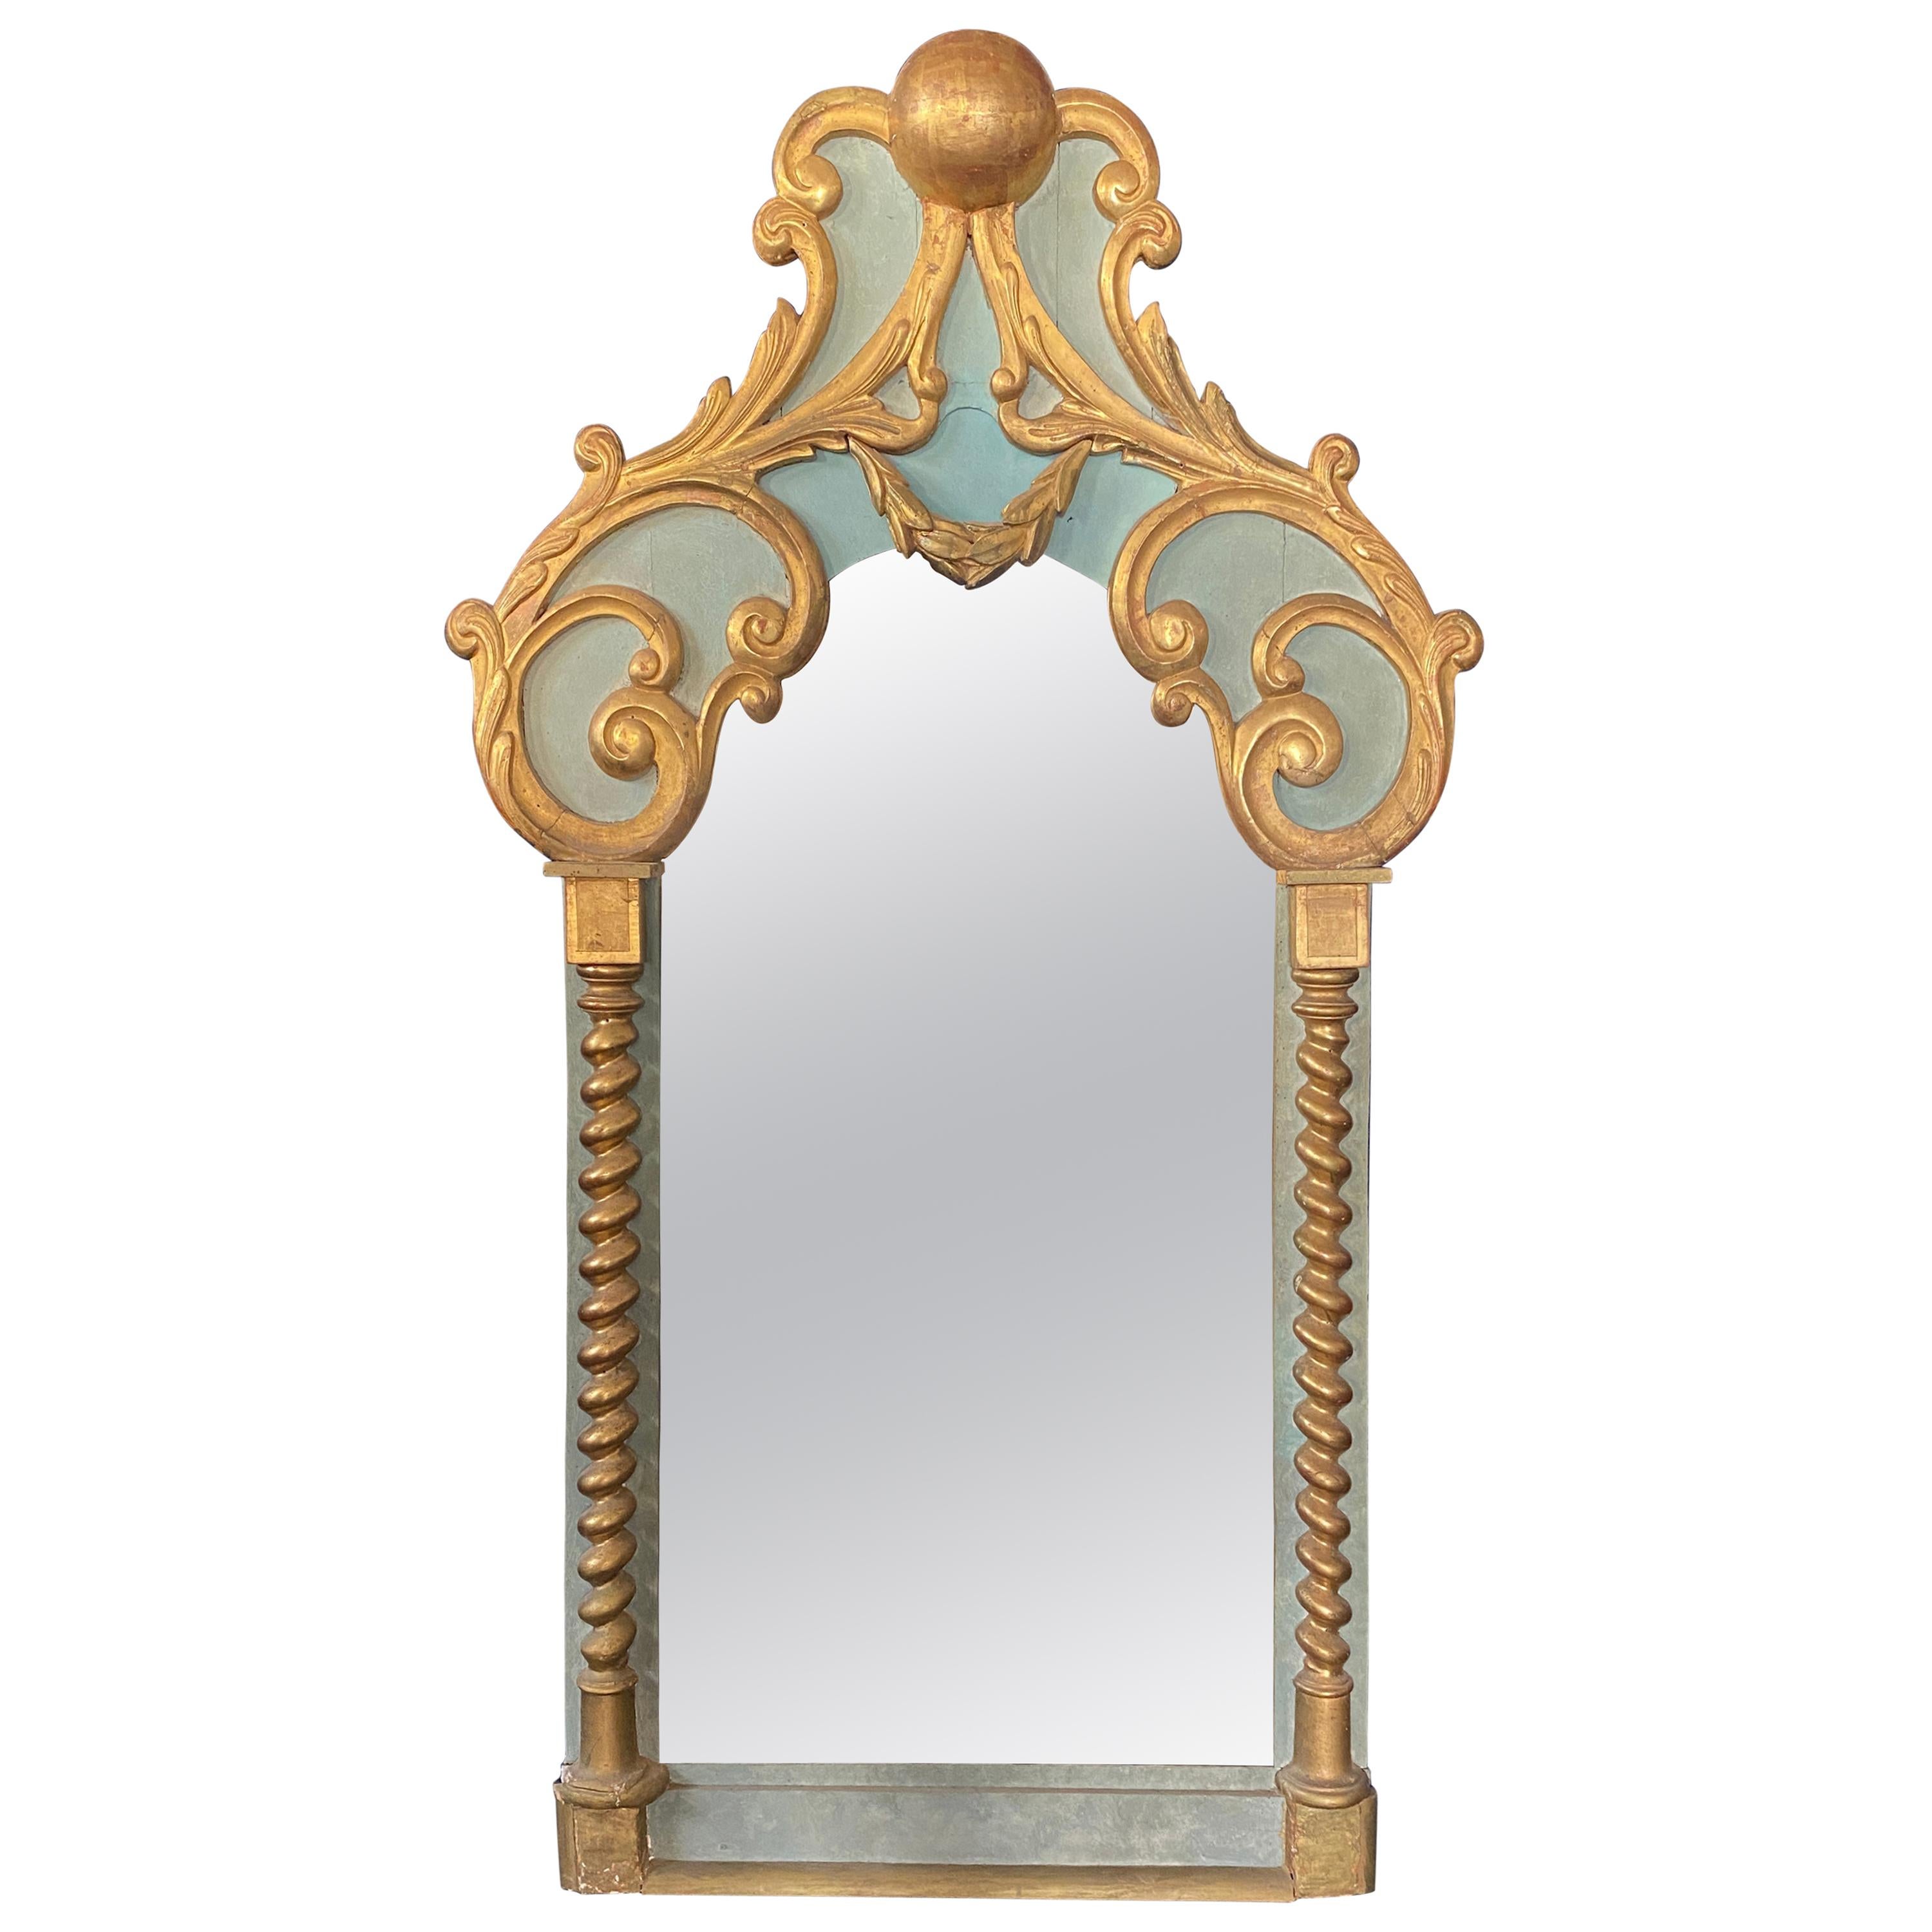 Grand miroir baroque rare, datant d'environ 1900 à 1930, en bois laqué et doré